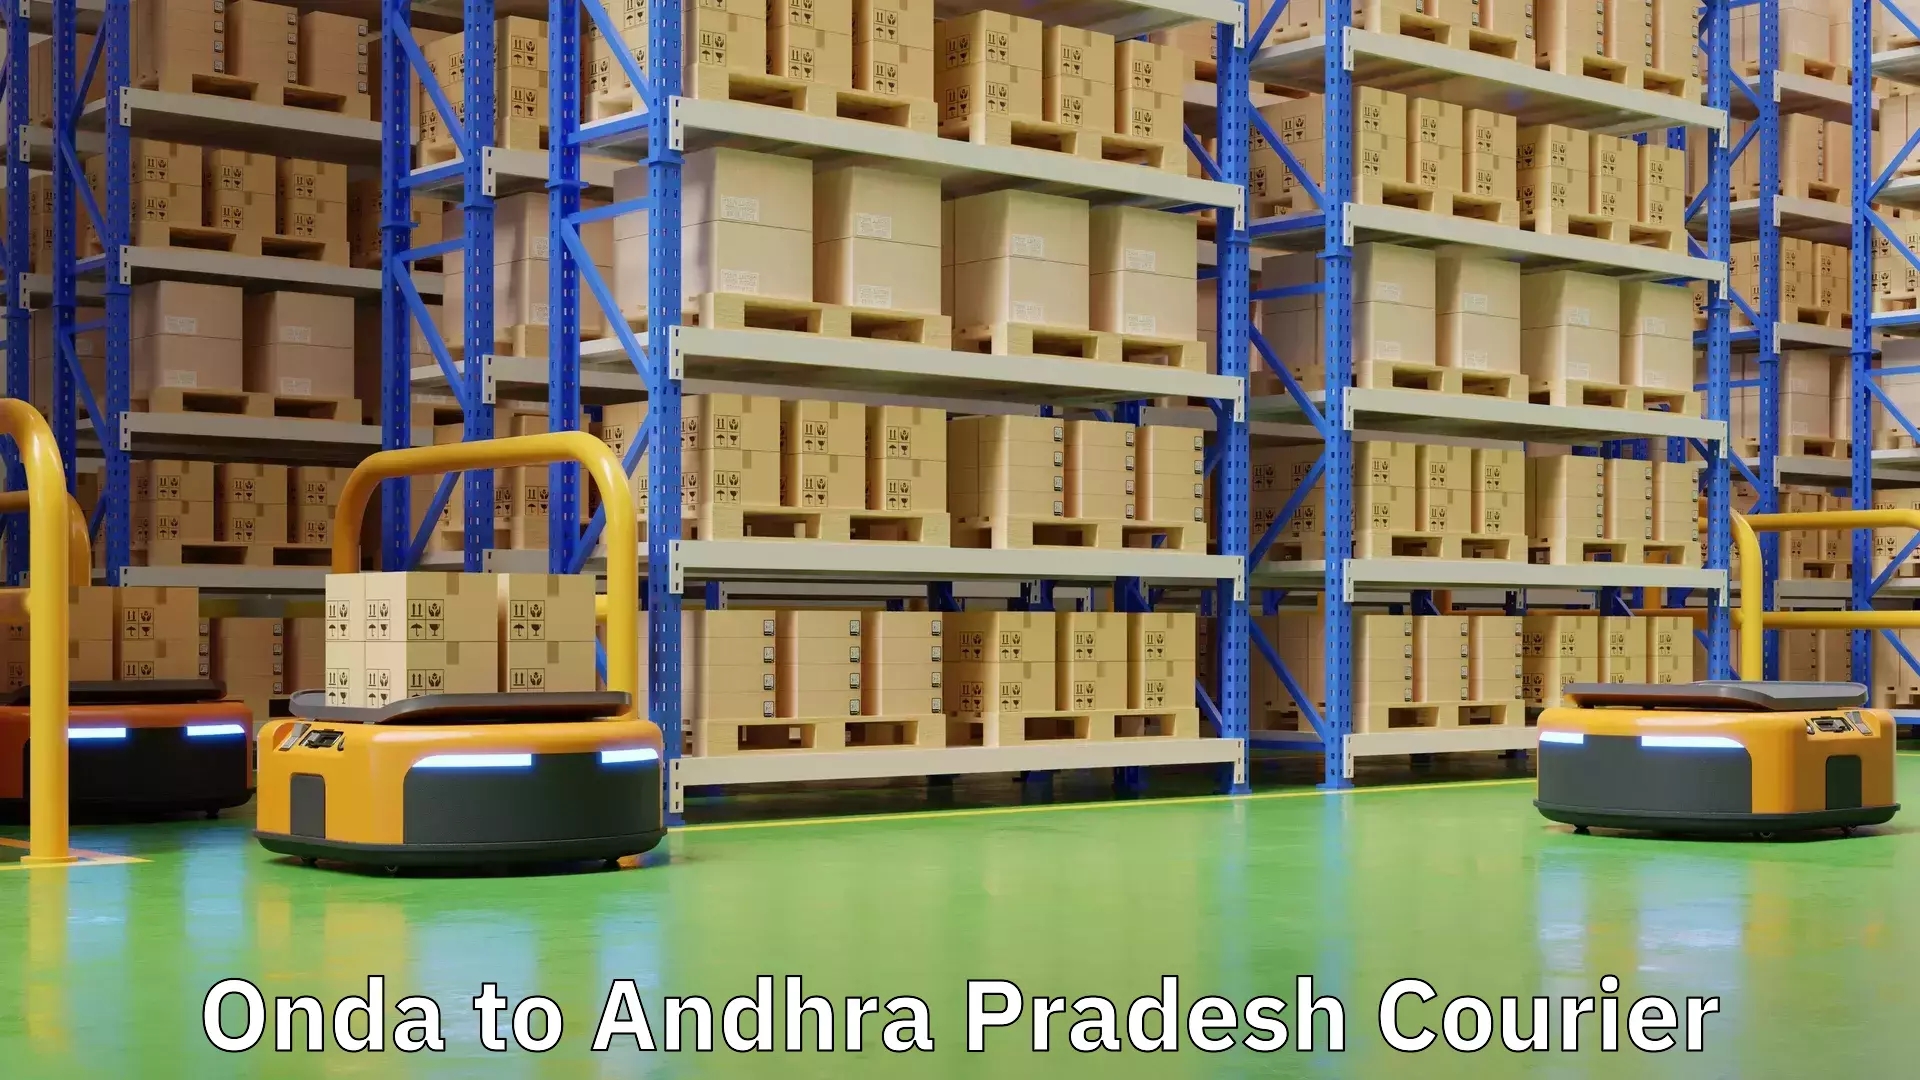 Seamless shipping experience Onda to Andhra Pradesh